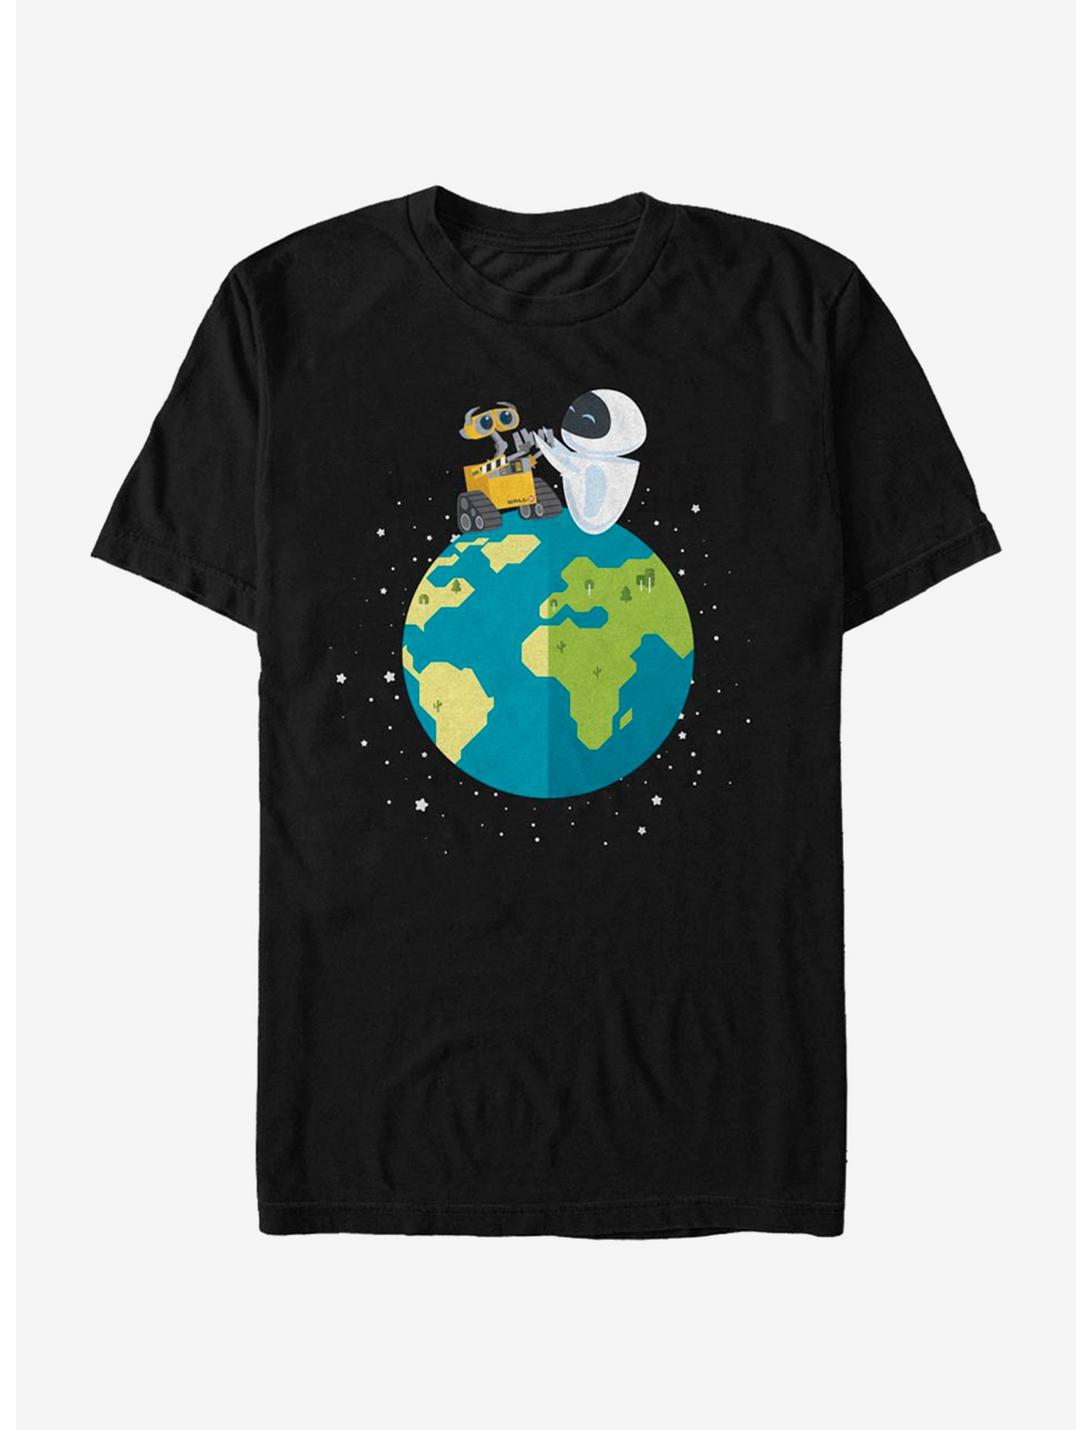 Disney Pixar Wall-E World Peace T-Shirt, BLACK, hi-res